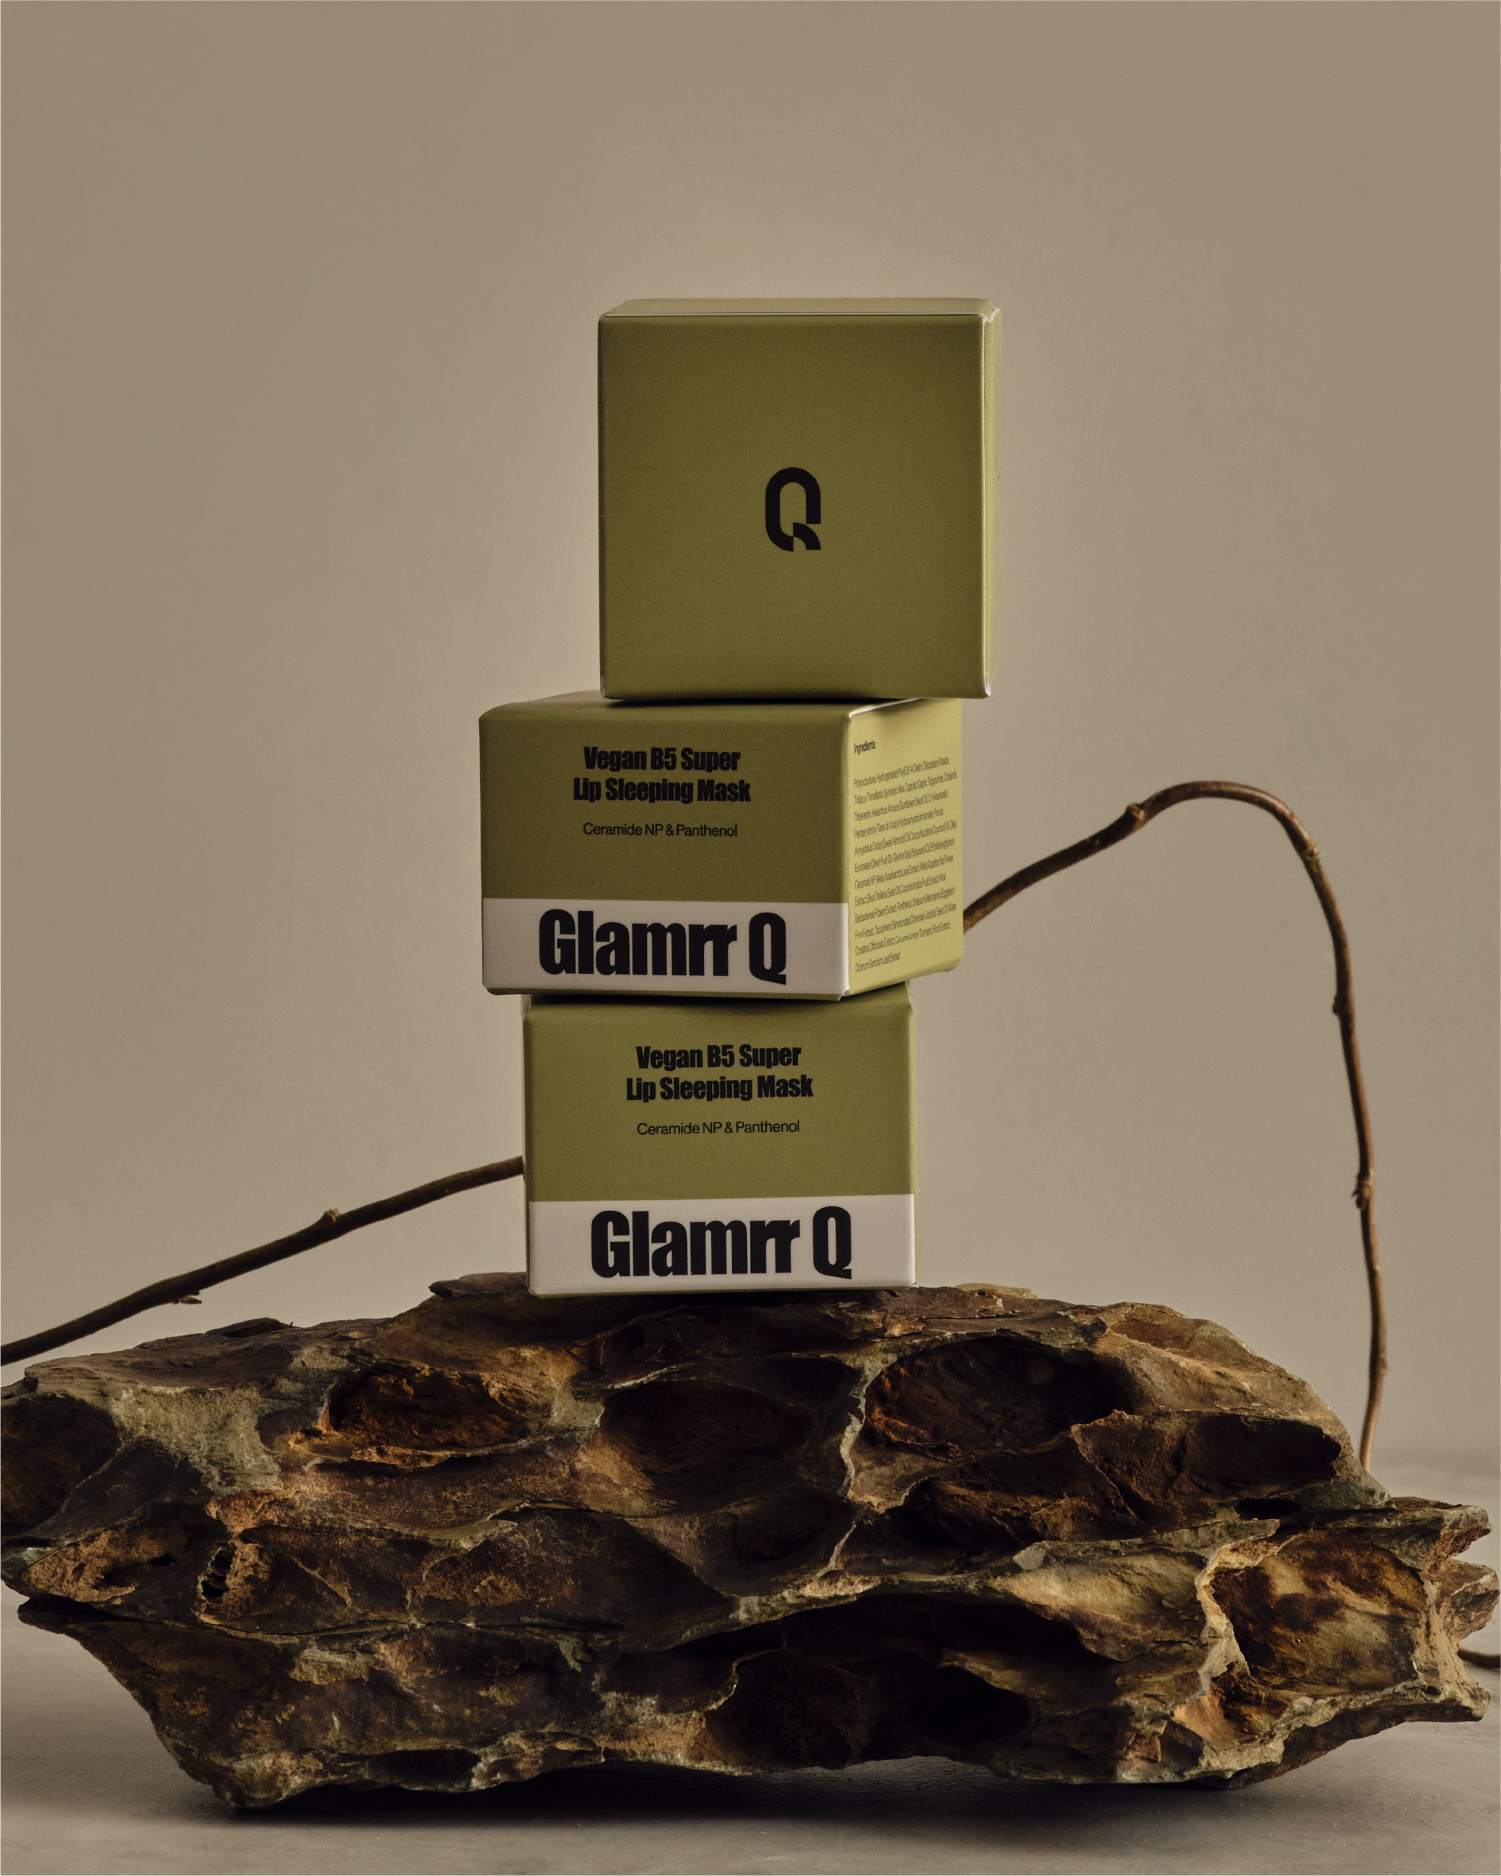 Glamrr Q – Makeup Brand For Sensitive Skin